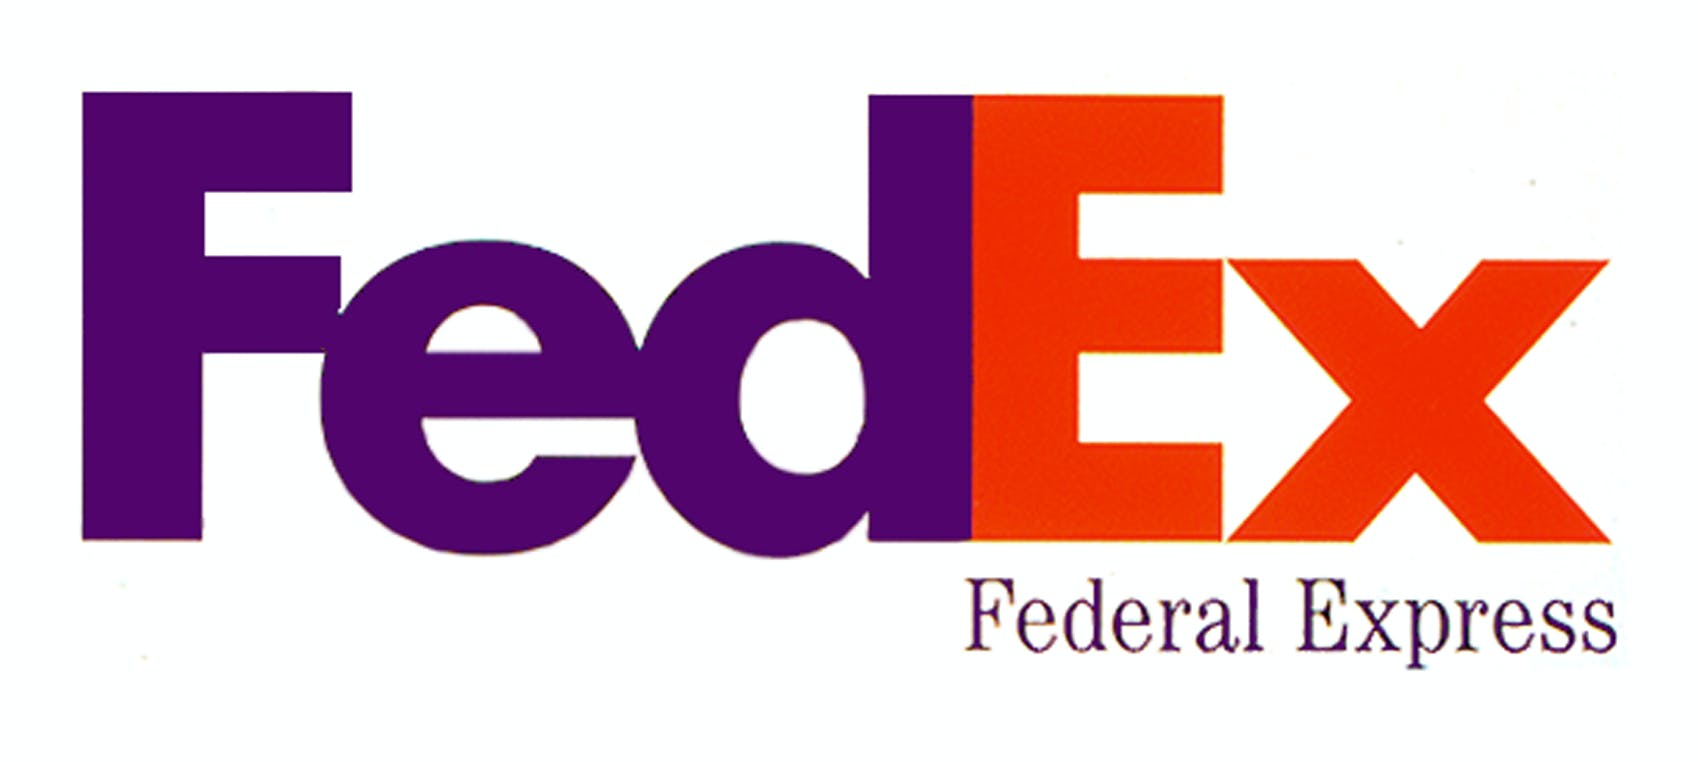 Fedex ogo